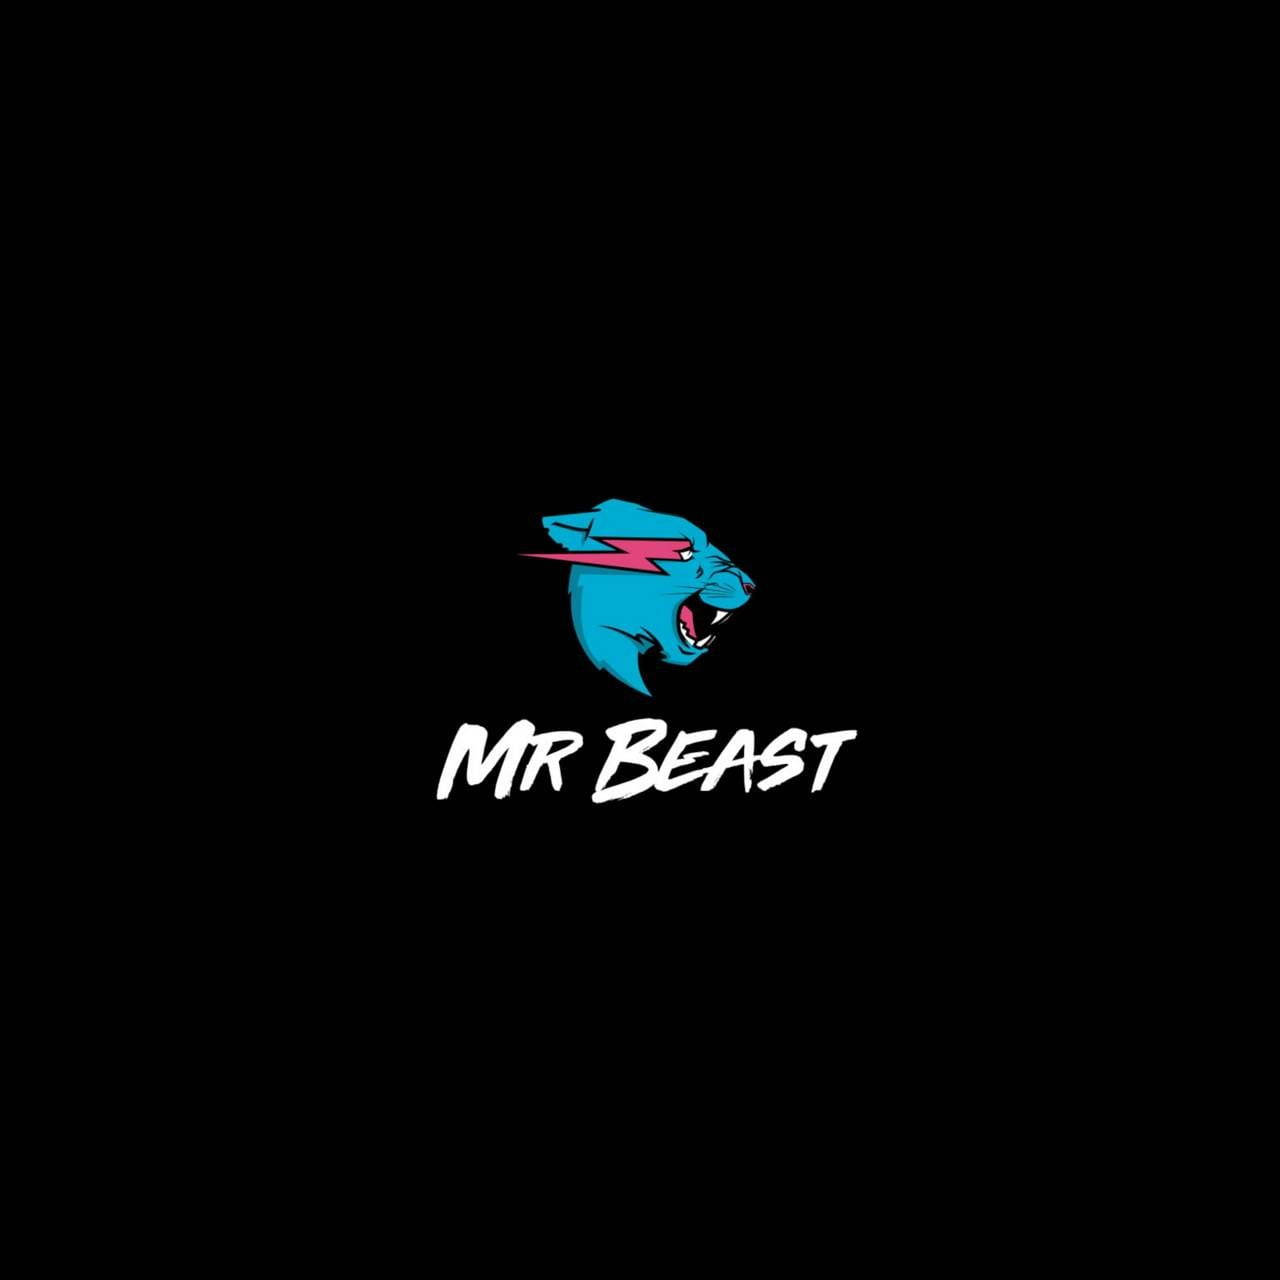 Мс бист. Мистер Бист. Мистер Бист логотип. MRBEAST аватарка. Логотип MRBEAST.